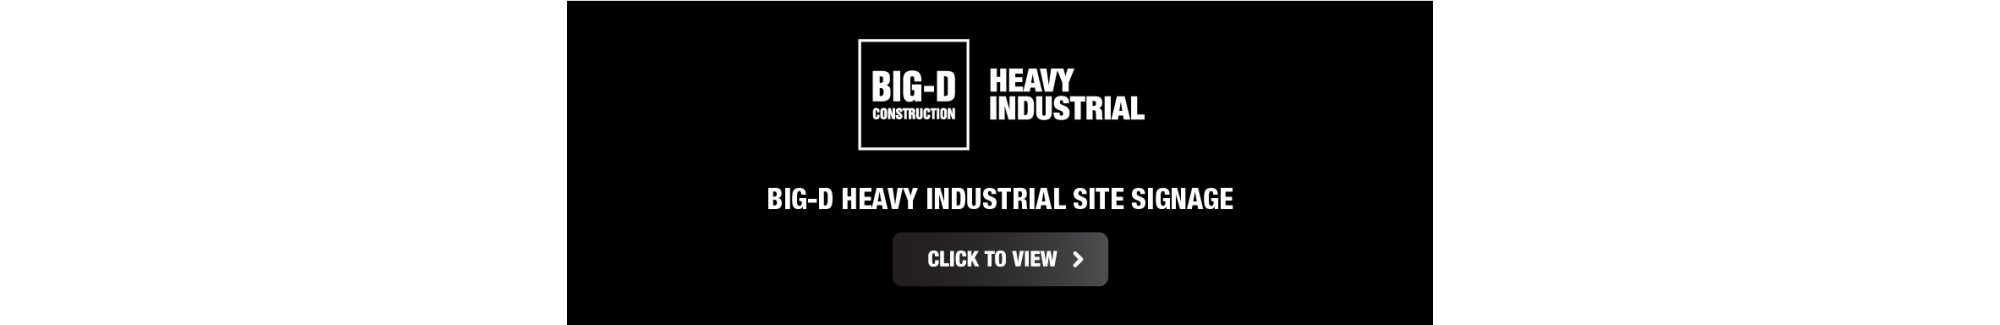 Big-D Industrial Banner